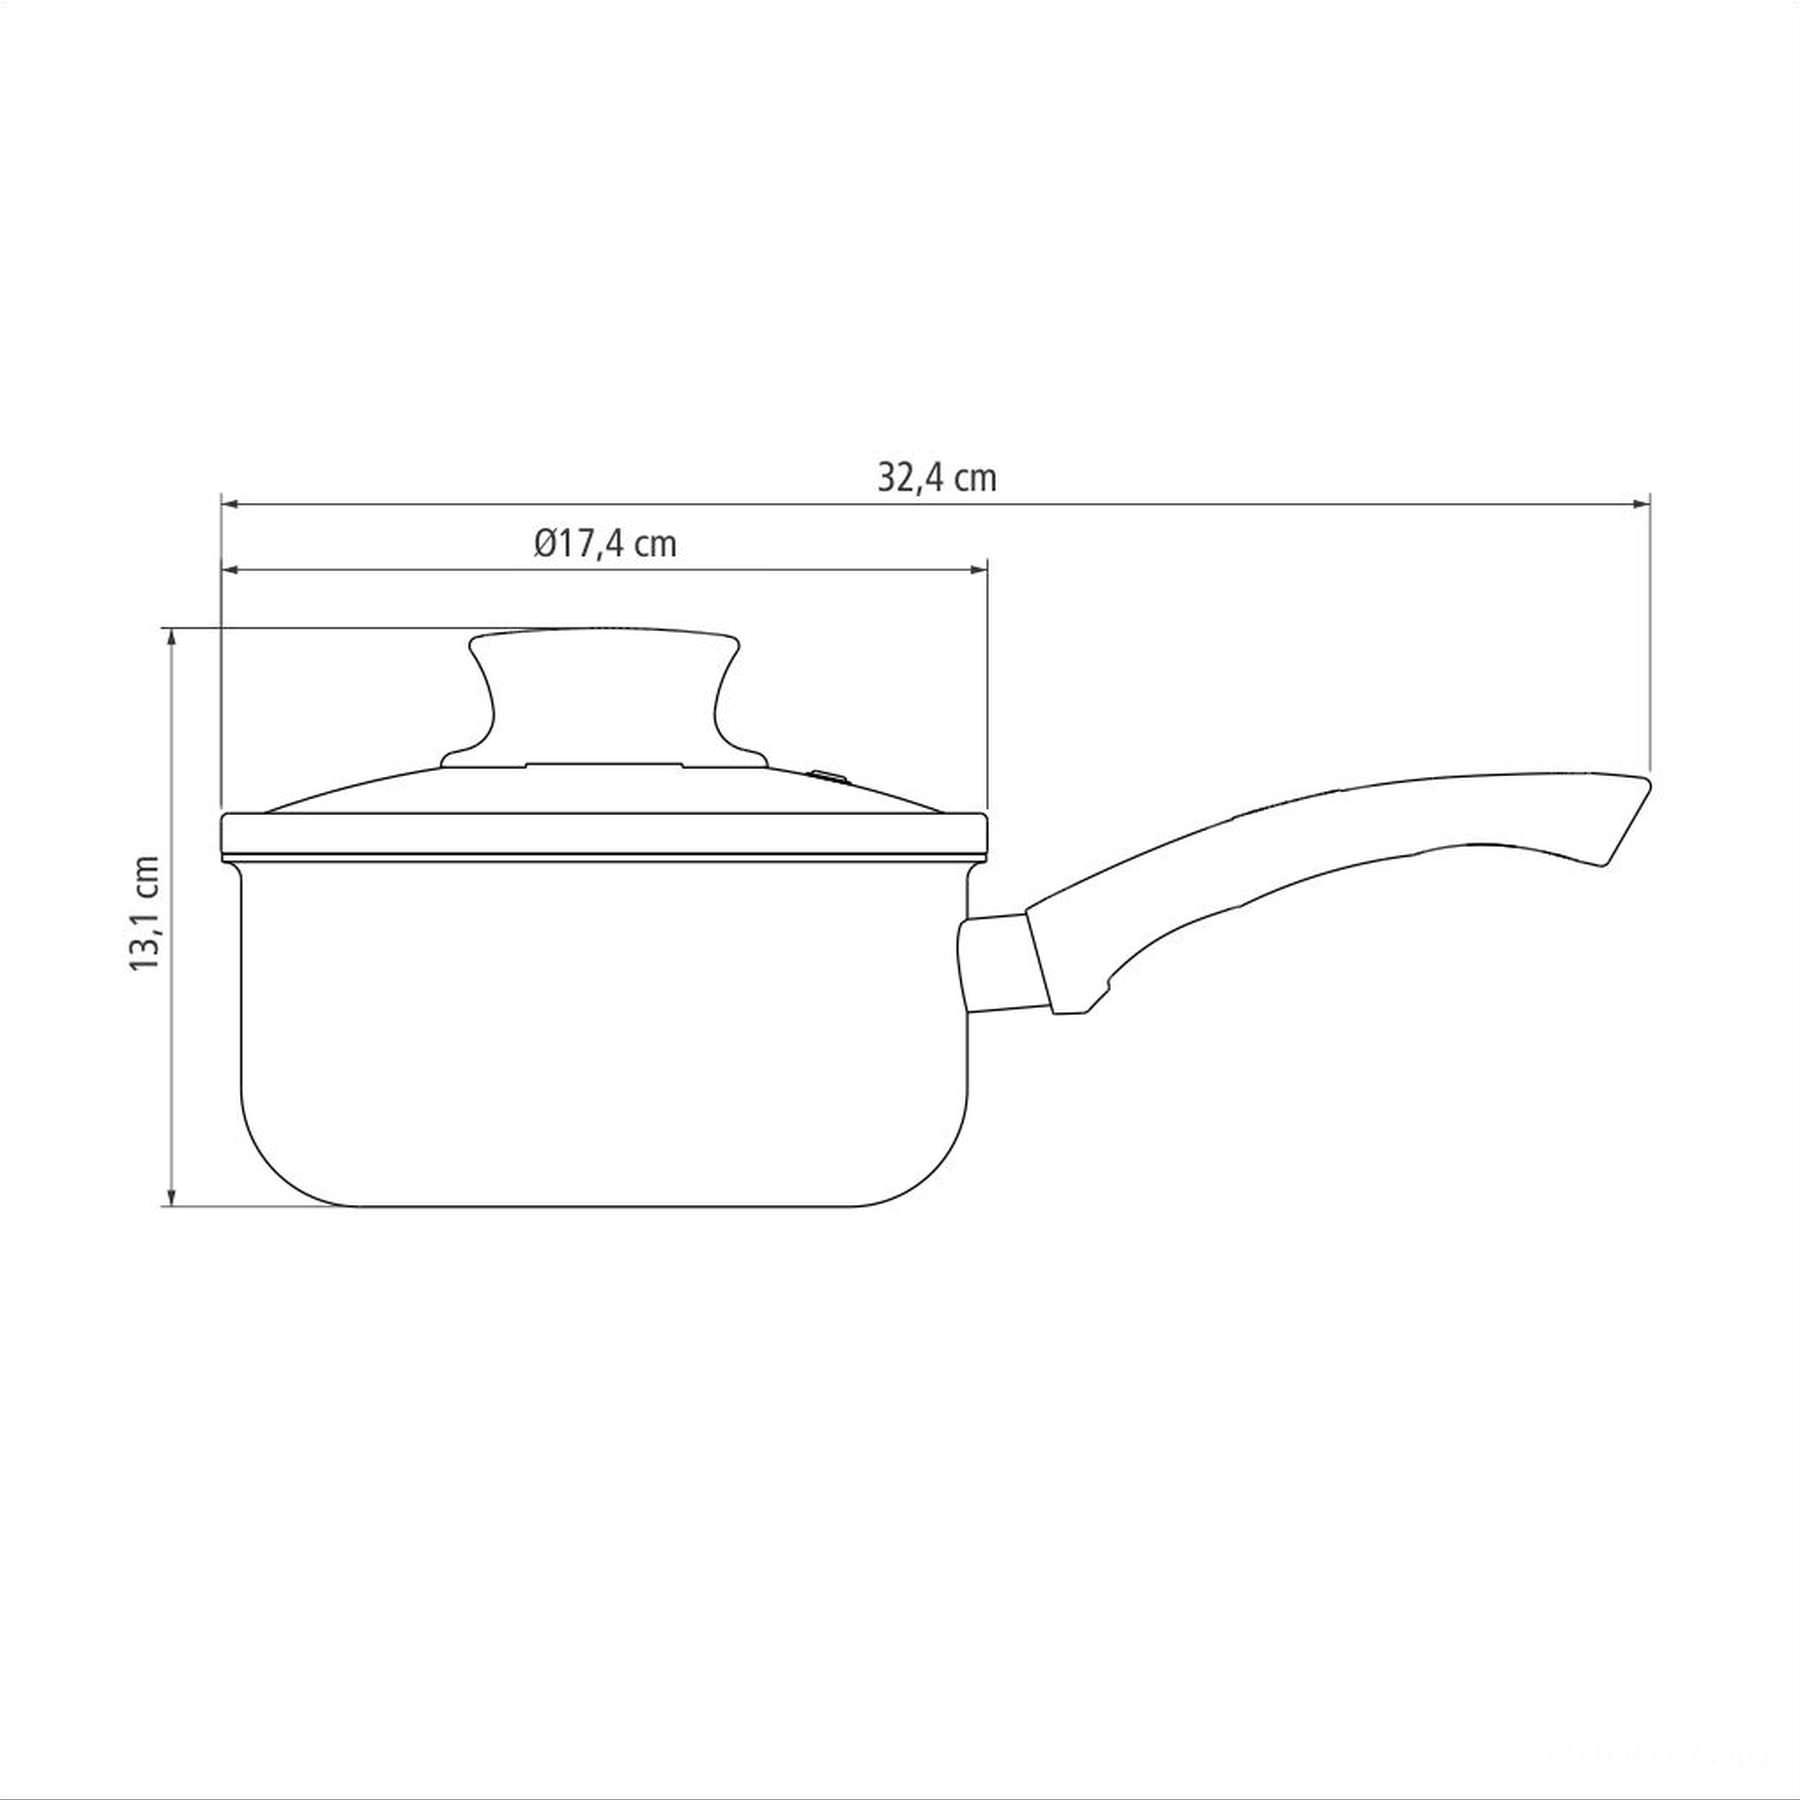 Panela Paris Antiaderente Starflon Max Chumbo com Tampa de Vidro 16 cm 1,5 L